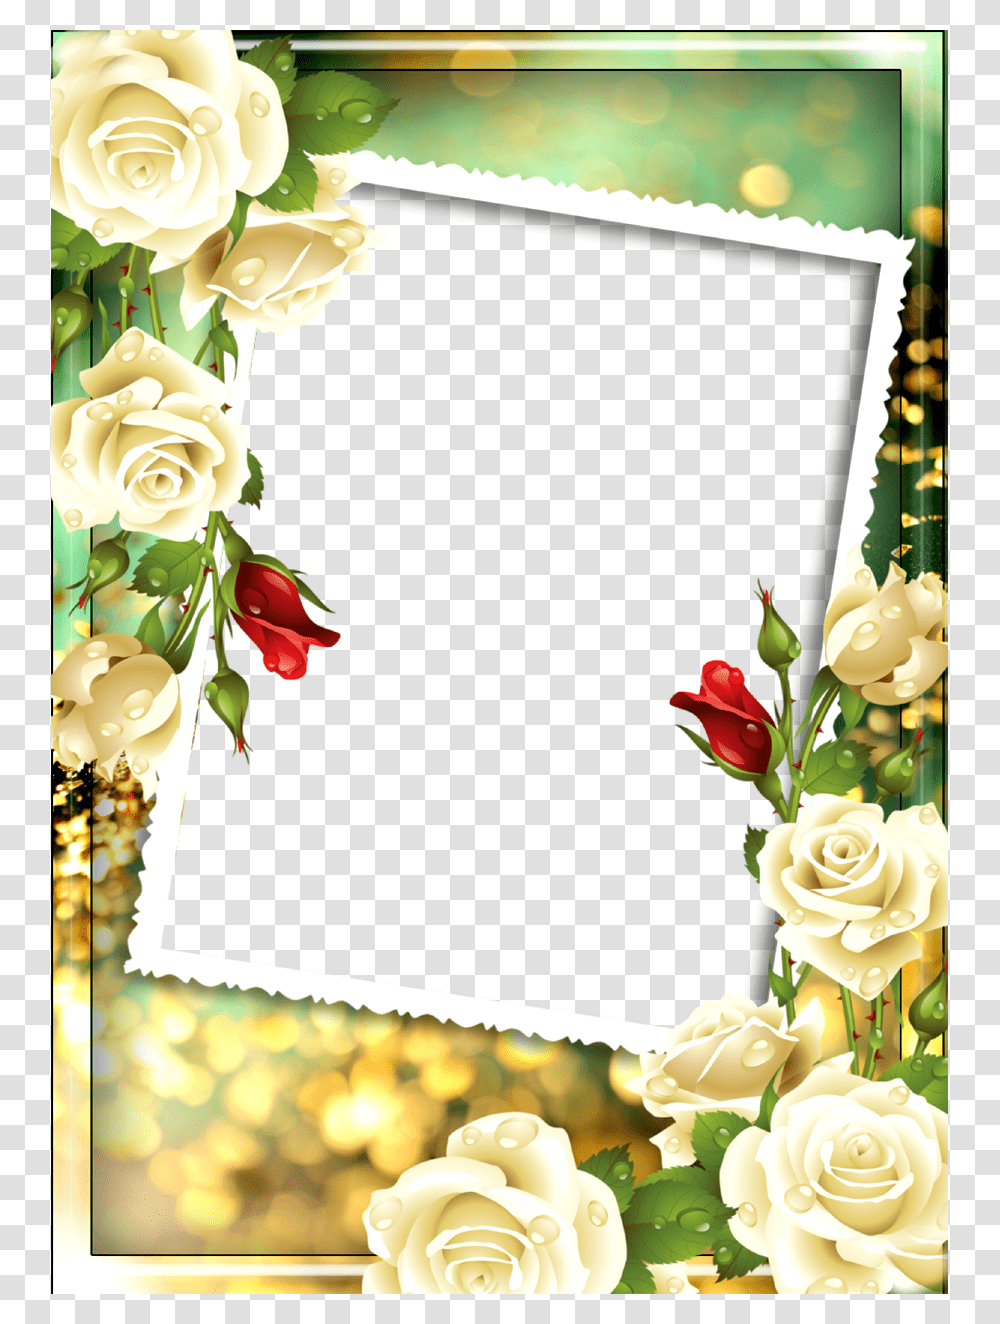 Frame Free, Floral Design, Pattern Transparent Png